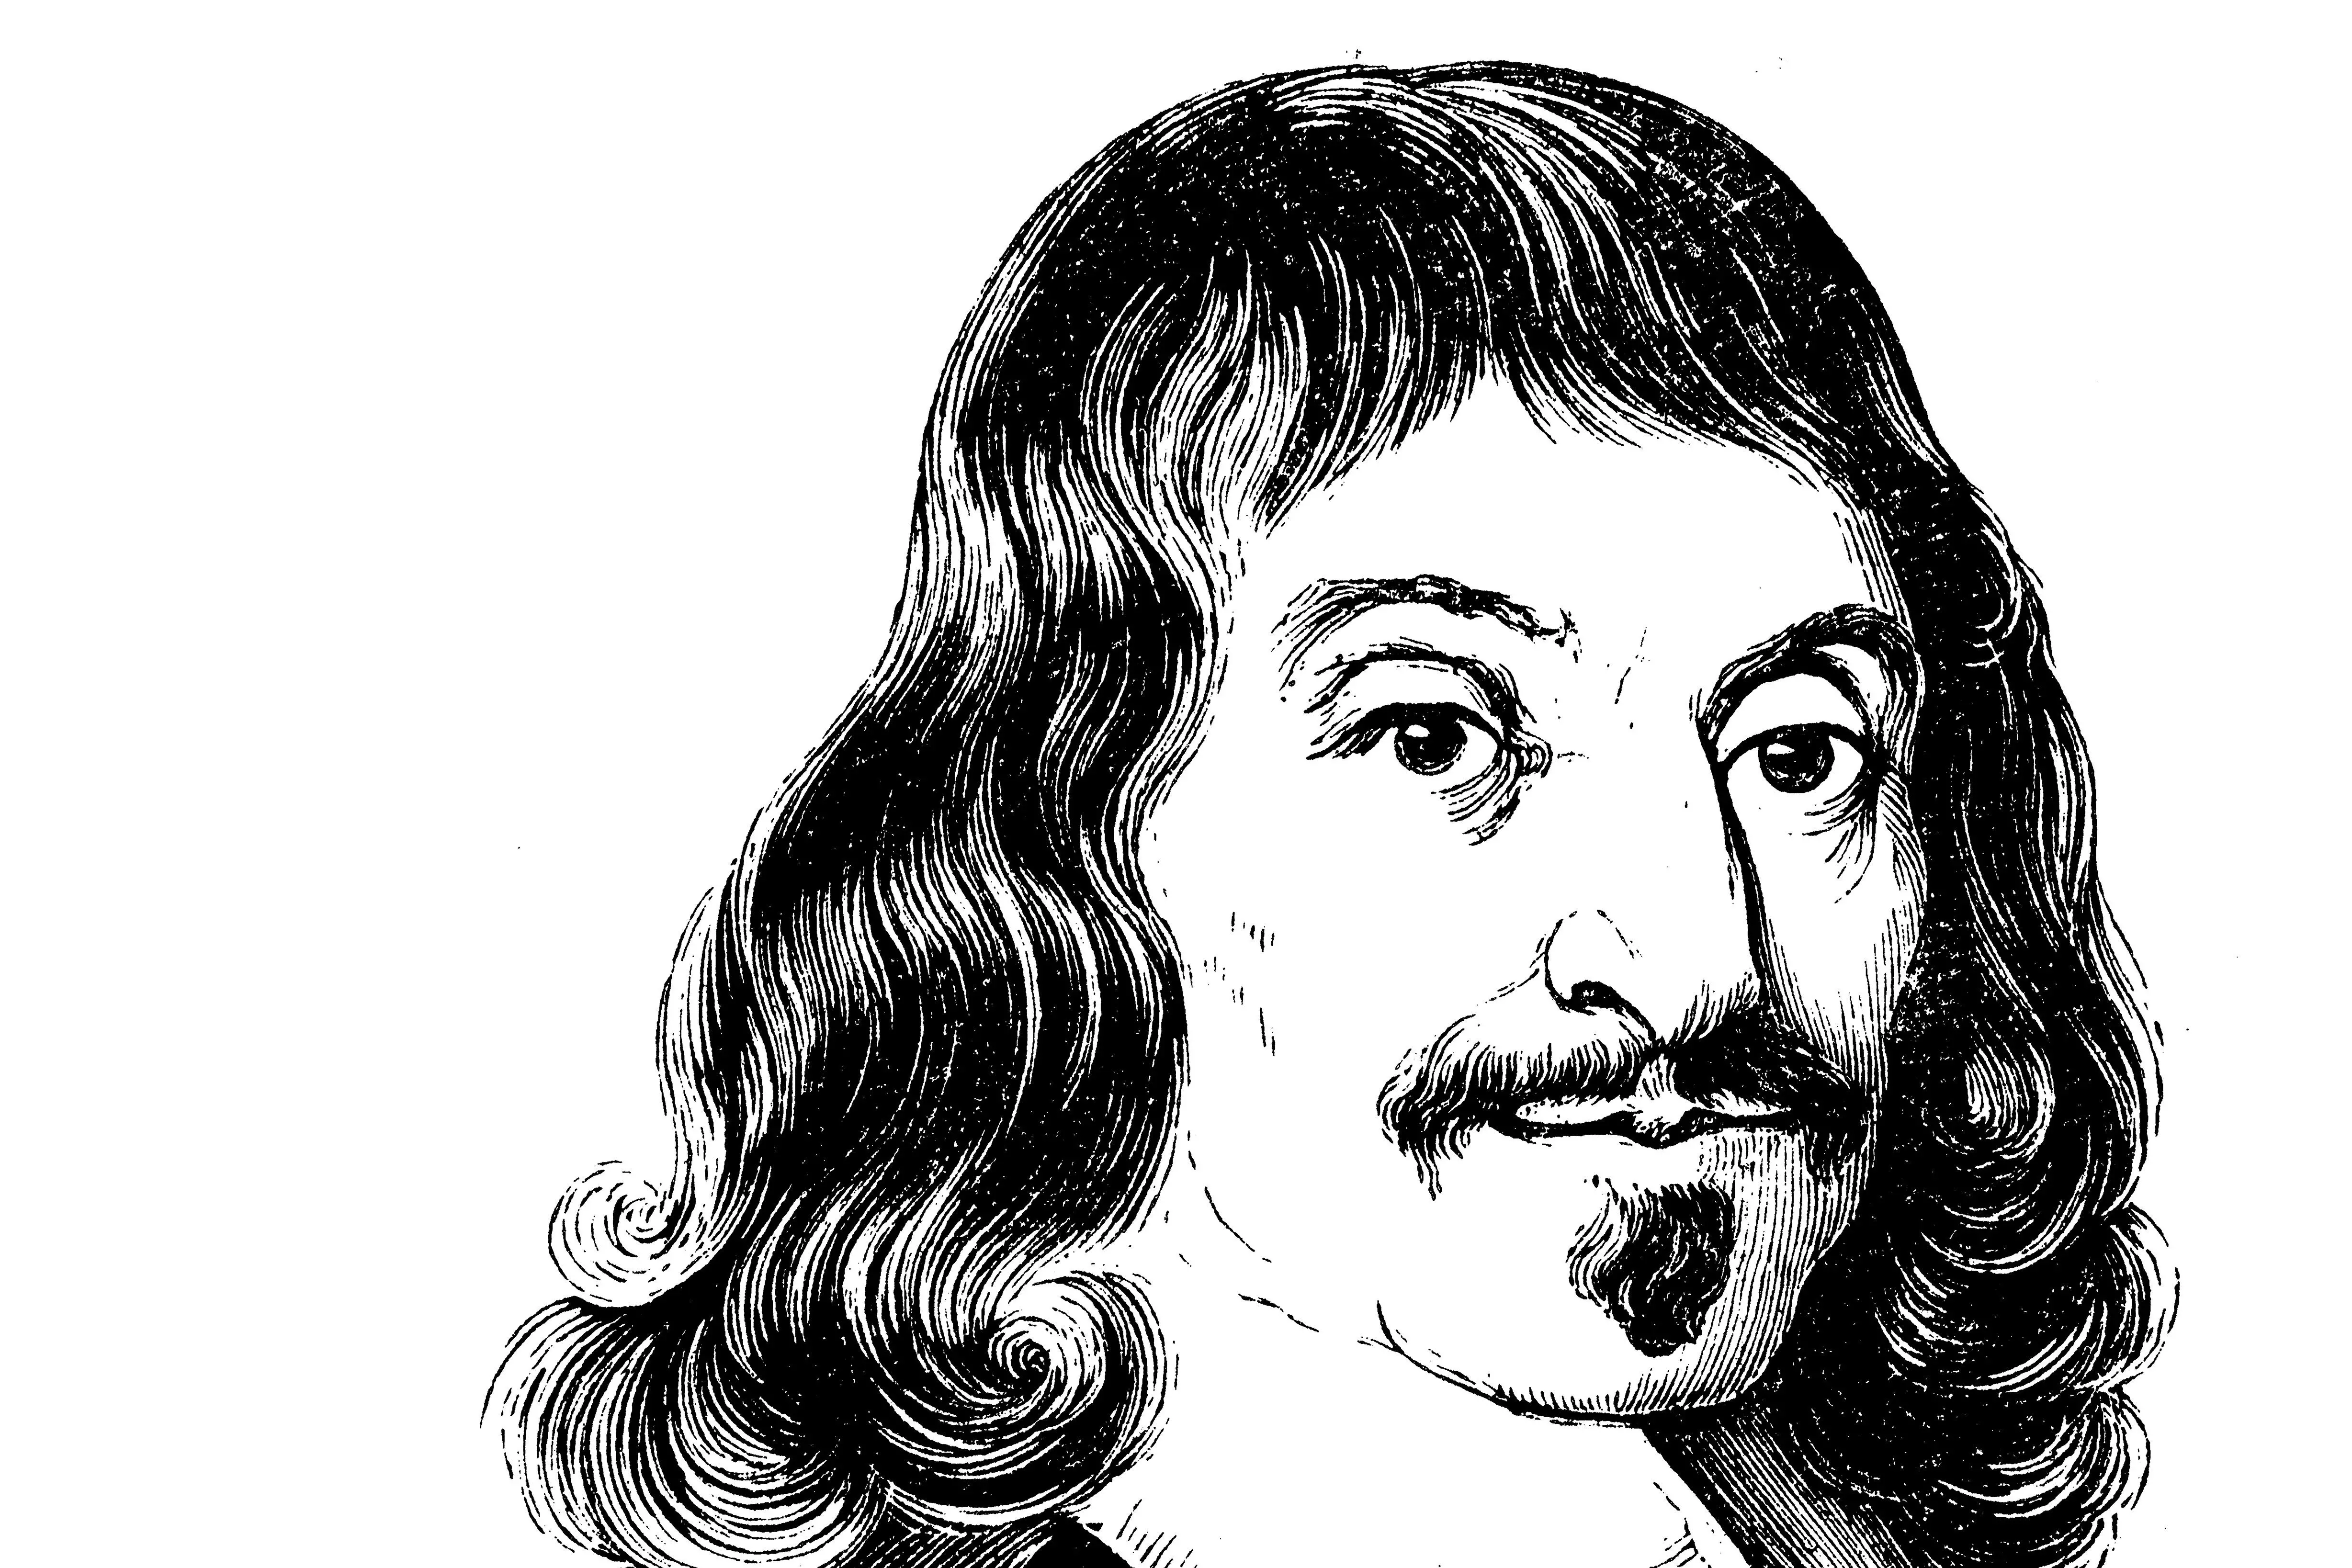 Рене Декарт (1596-1650)